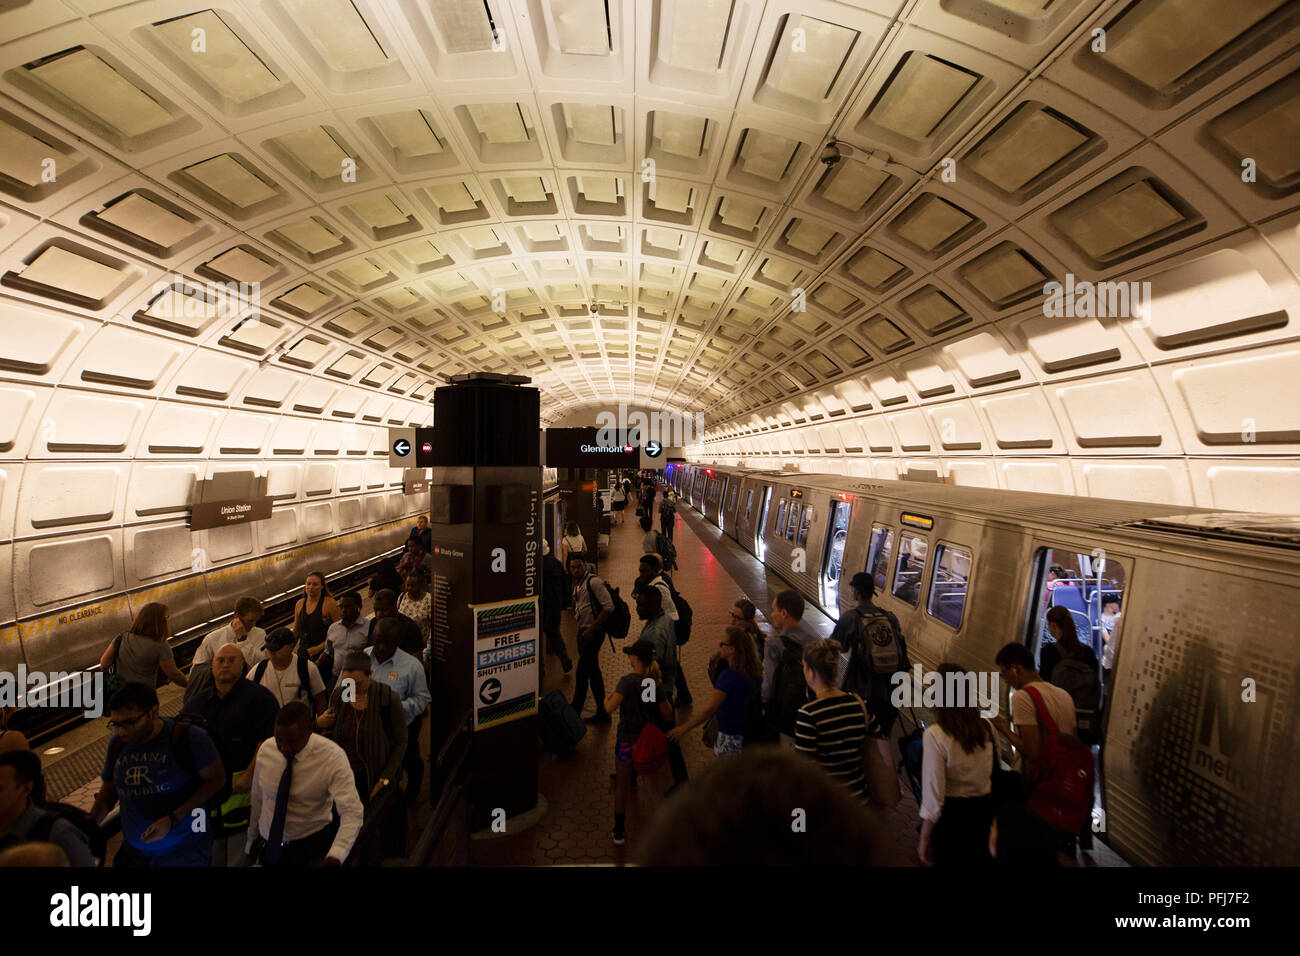 Un train arrive dans la station de métro Union Station à Washington, DC, USA. Banque D'Images